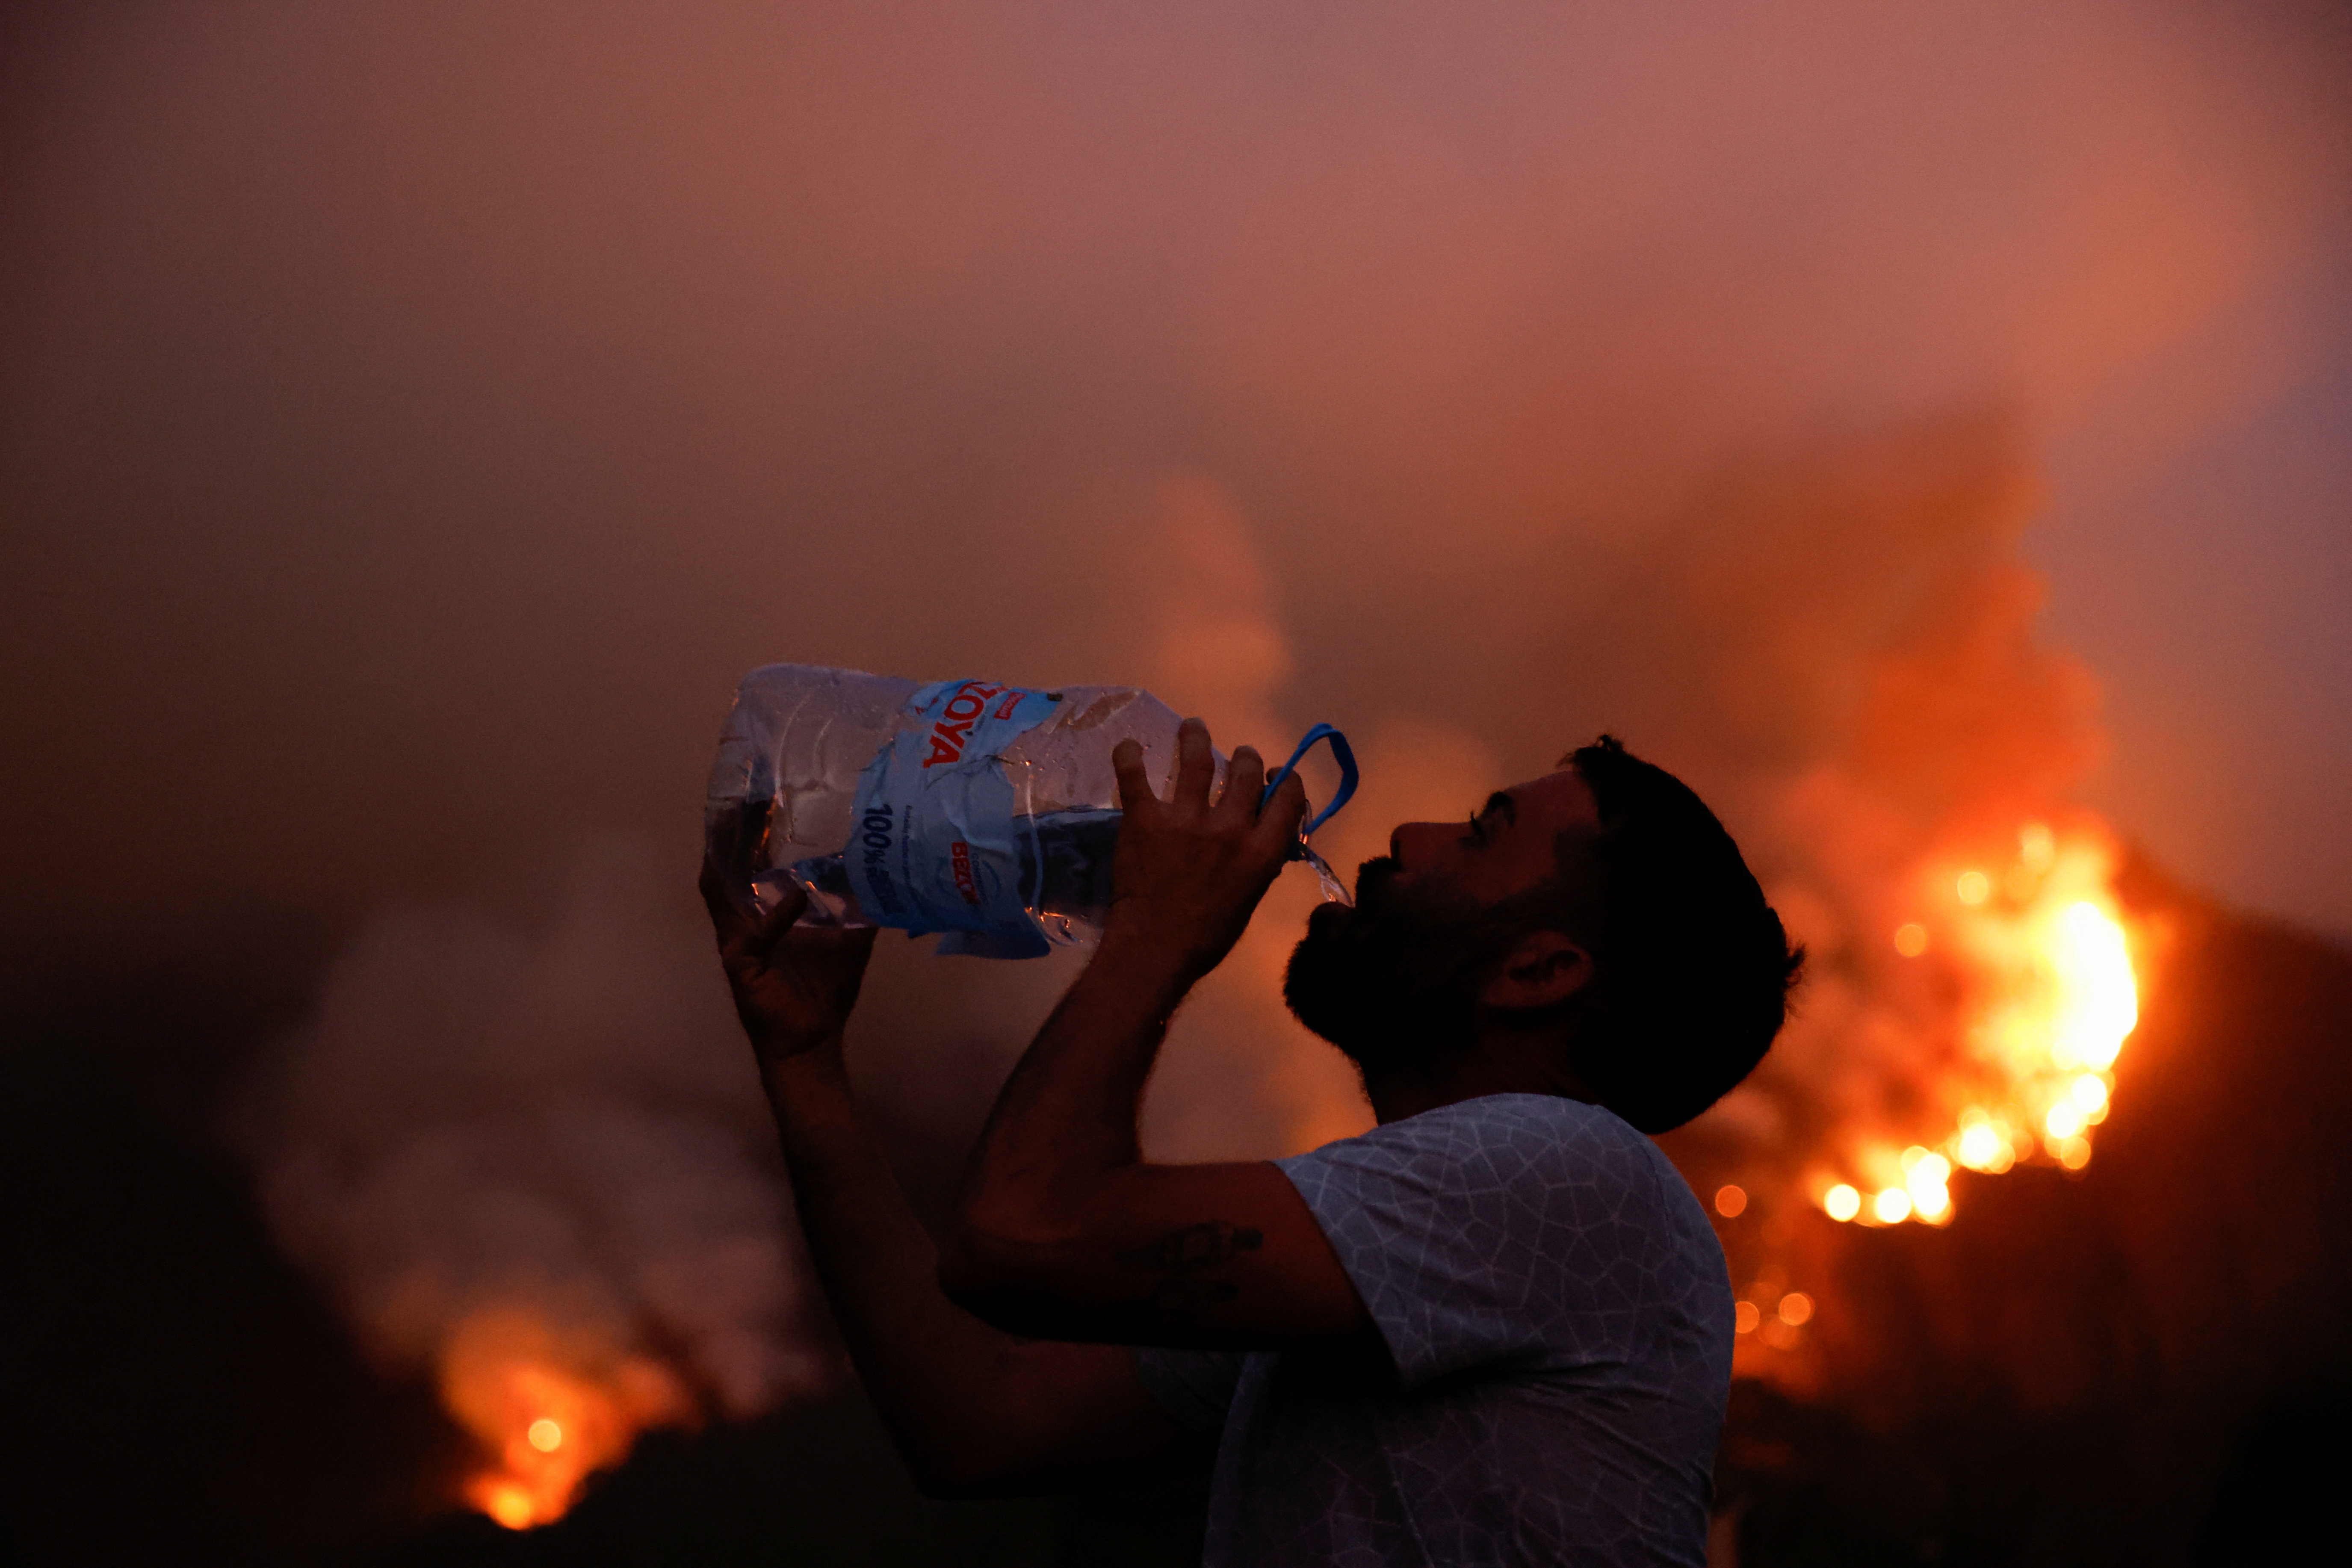 Es wurde beschrieben, dass die Waldbrände „außer Kontrolle“ seien und Tausende zur Flucht gezwungen seien